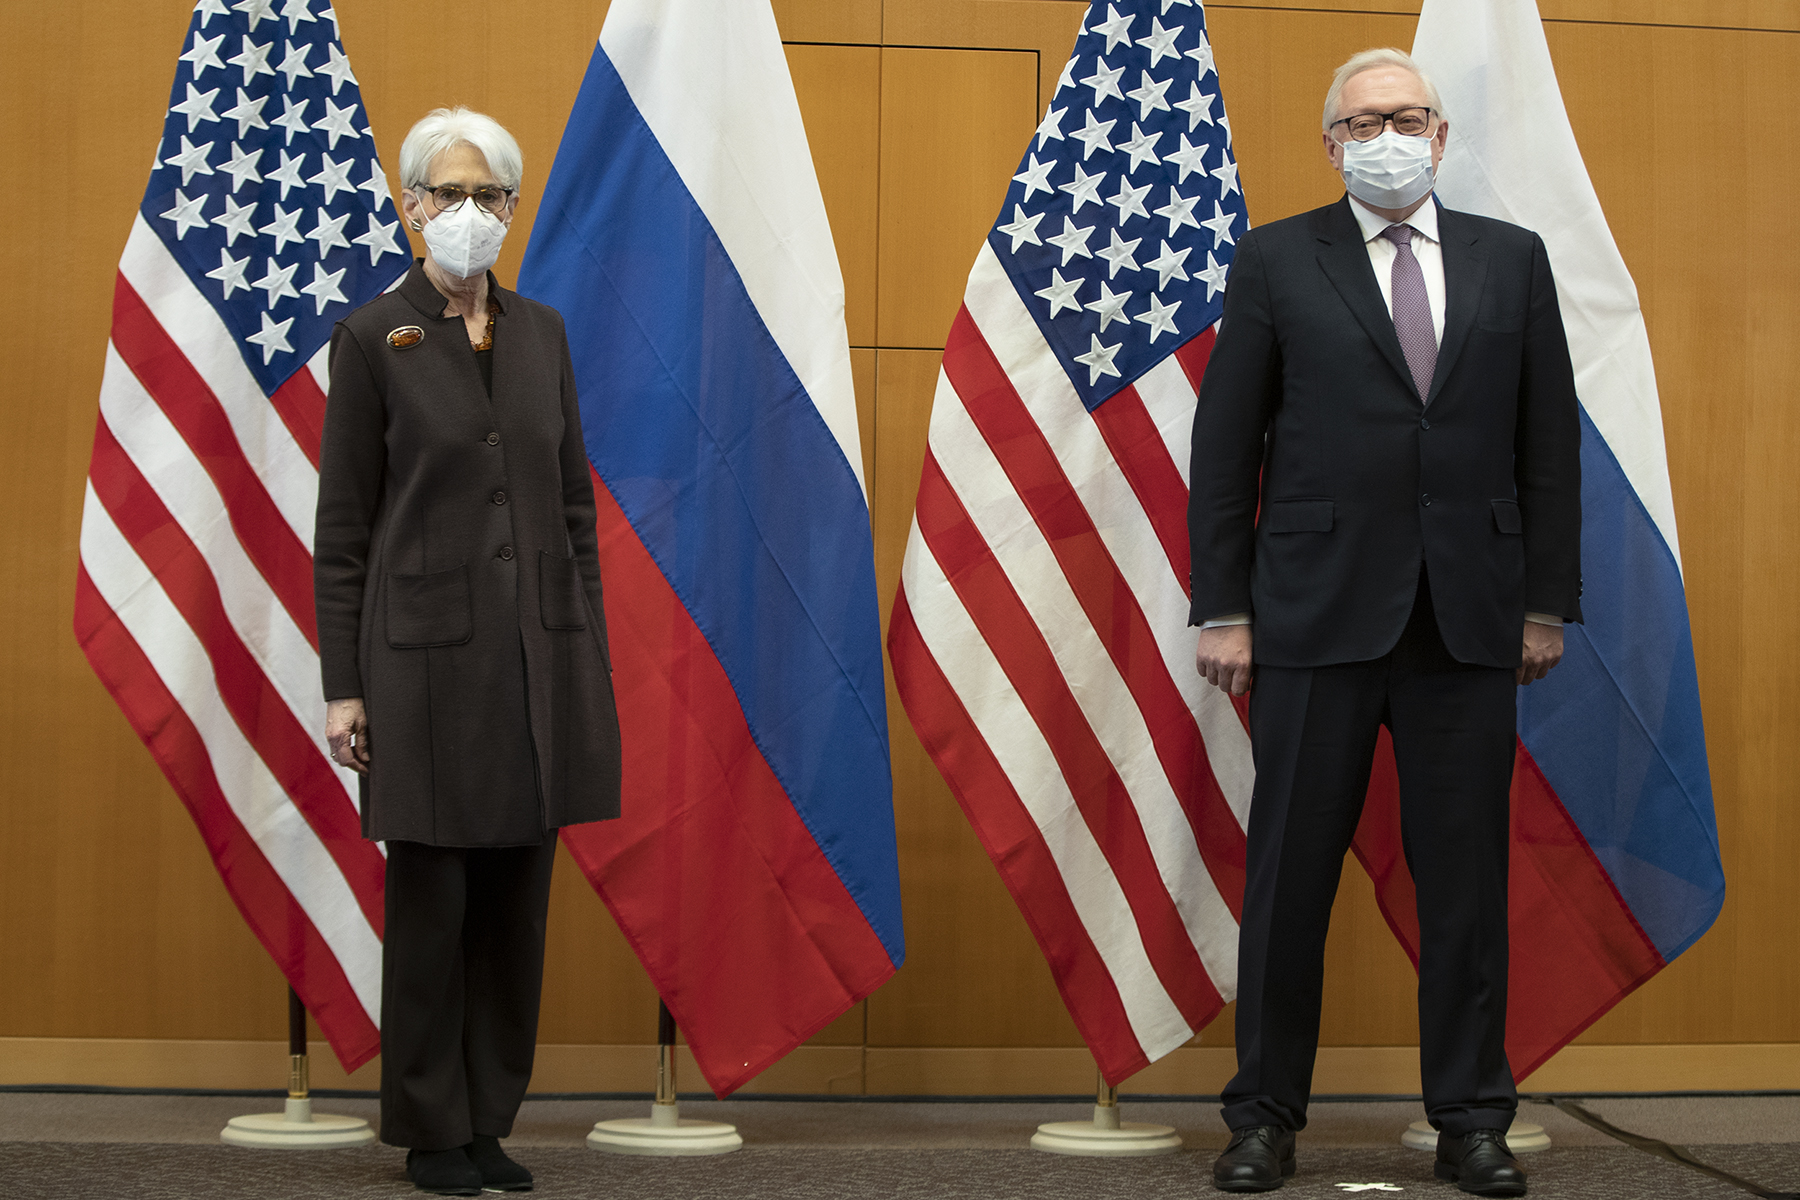 Rozmowy USA-Rosja – rozładowanie napięcia na Ukrainie? Panel dyskusyjny Warsaw Institute